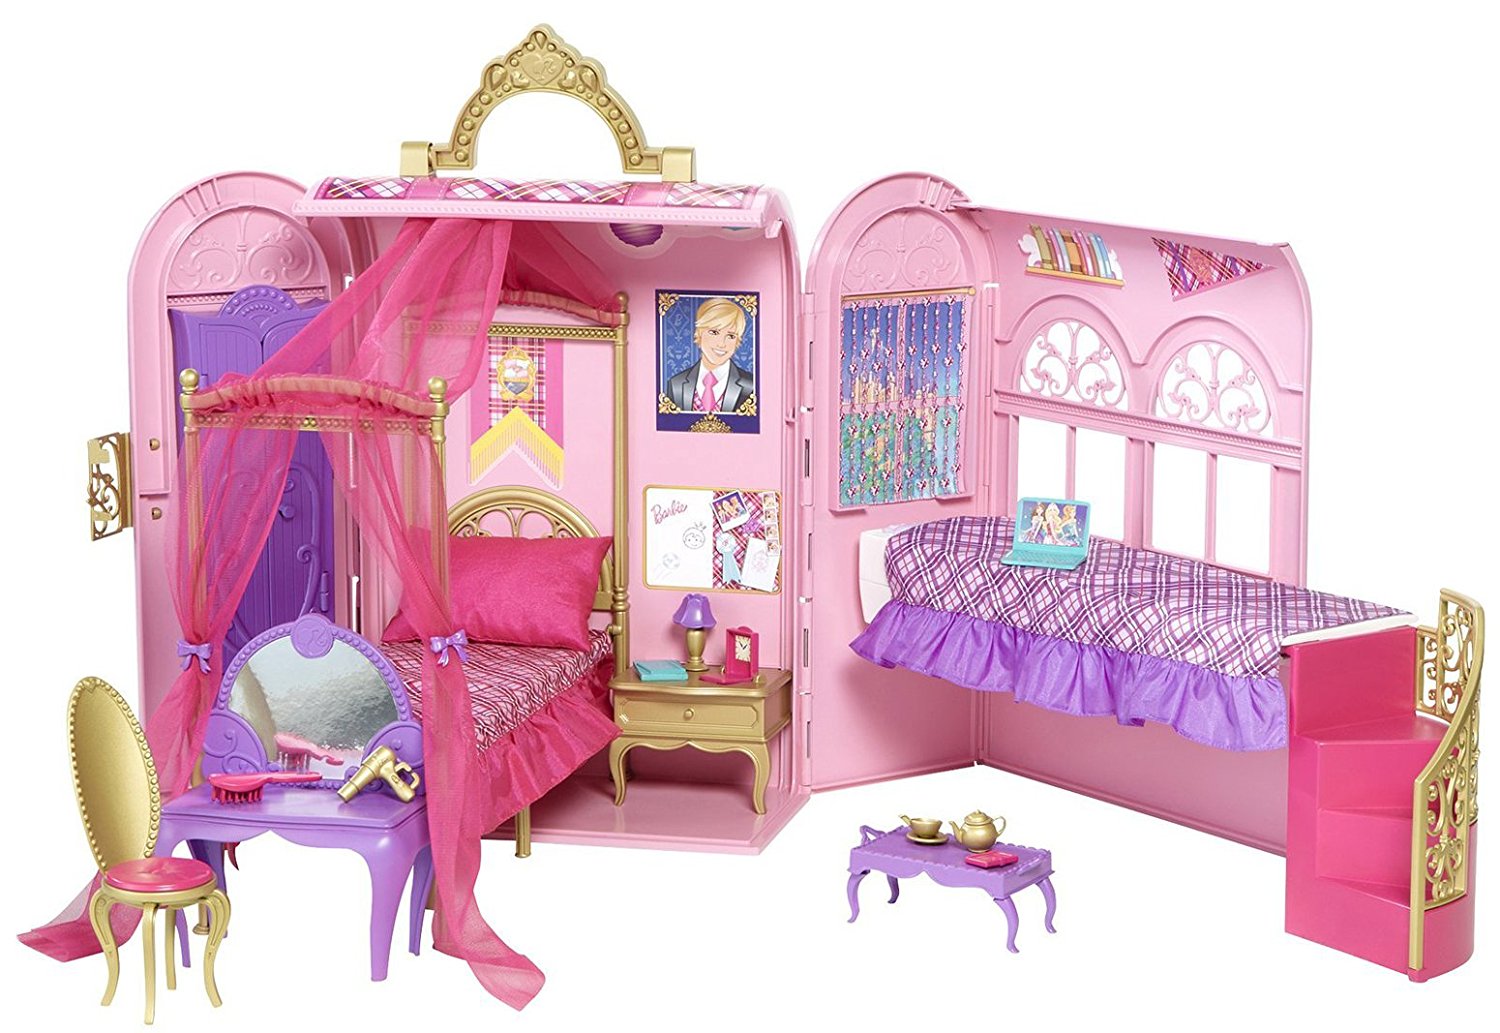 Barbie Escola de Princesas Princess Charm School Princess Playset